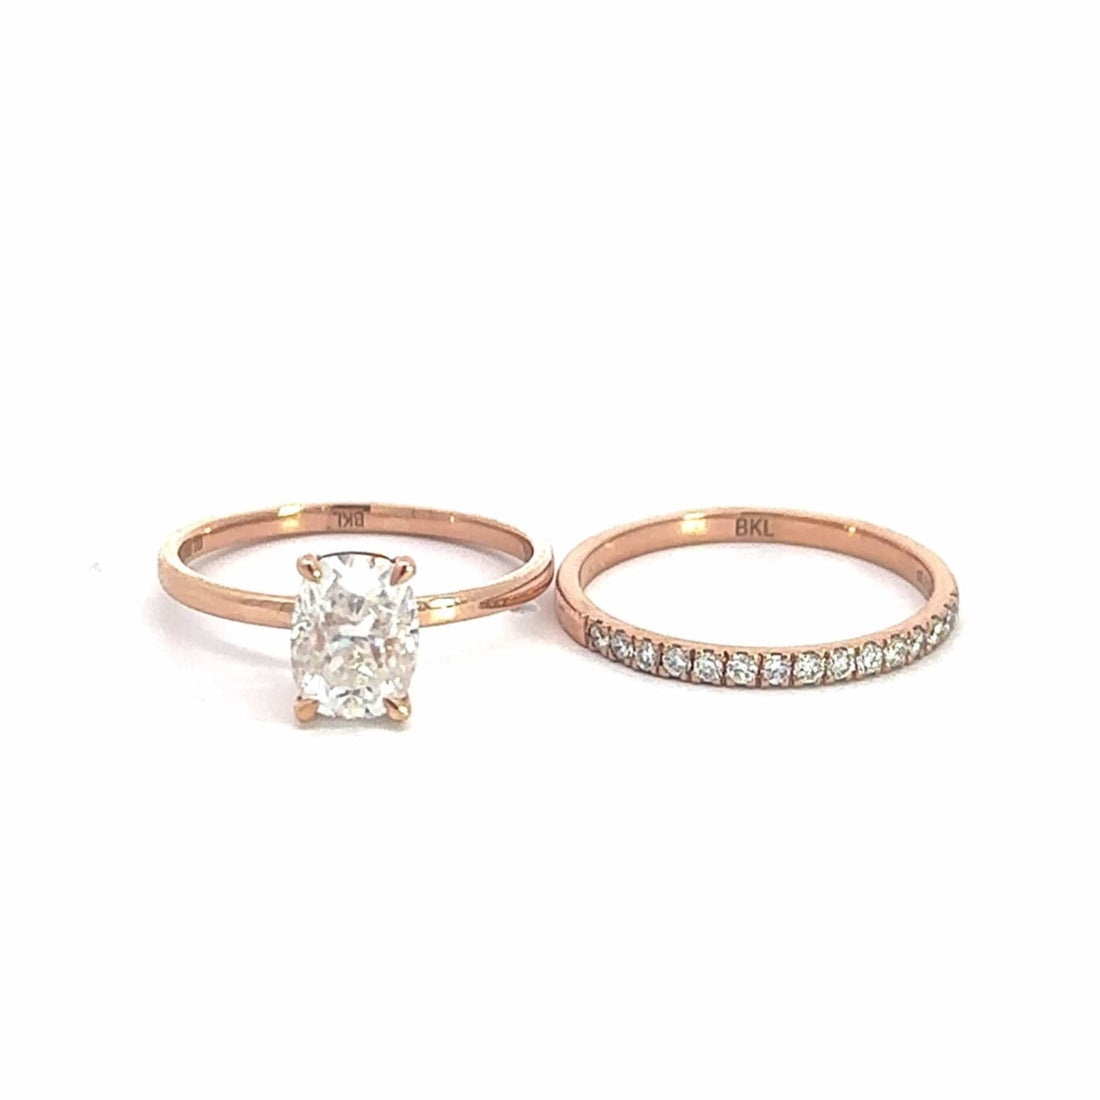 Baikalla Sterling Silver Moissanite Ring 4 14k Rose Gold Moissanite Diamond 2 in 1 Engagement Ring